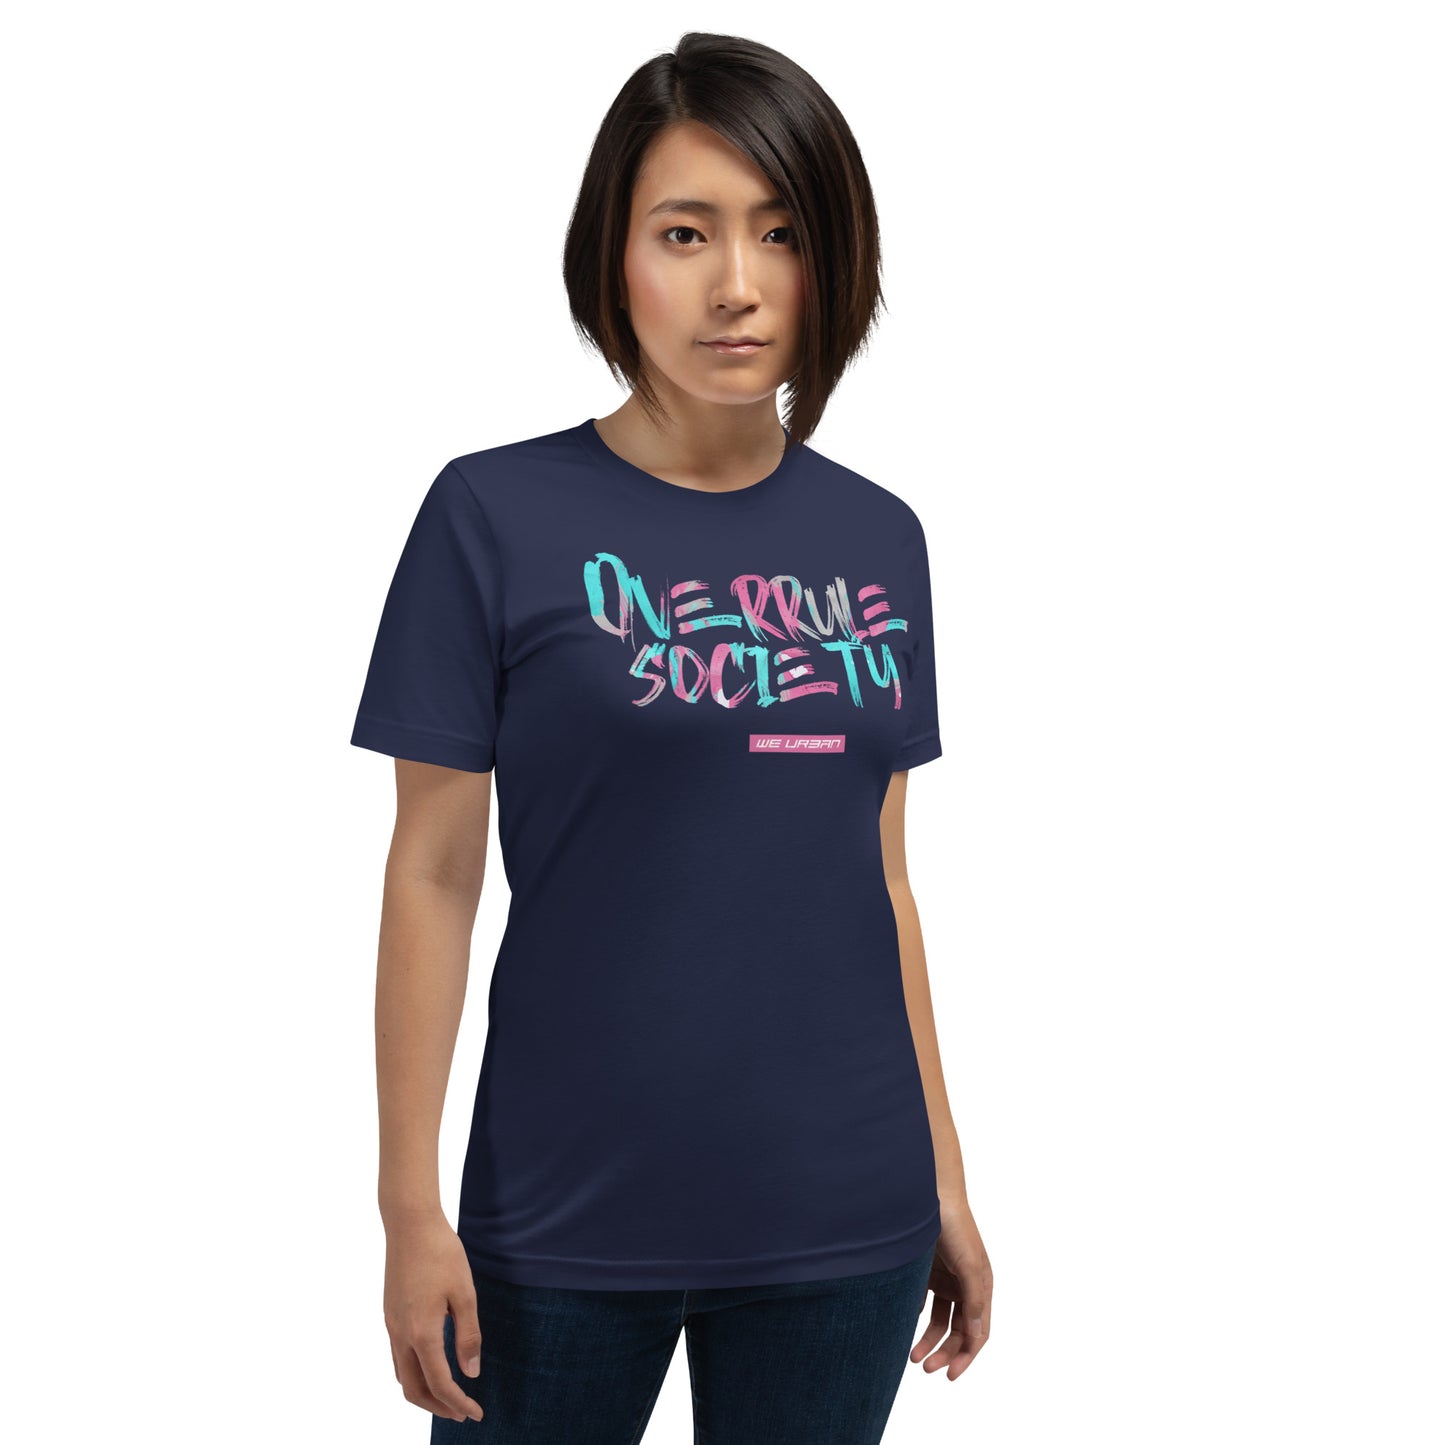 OVRL Society t-shirt